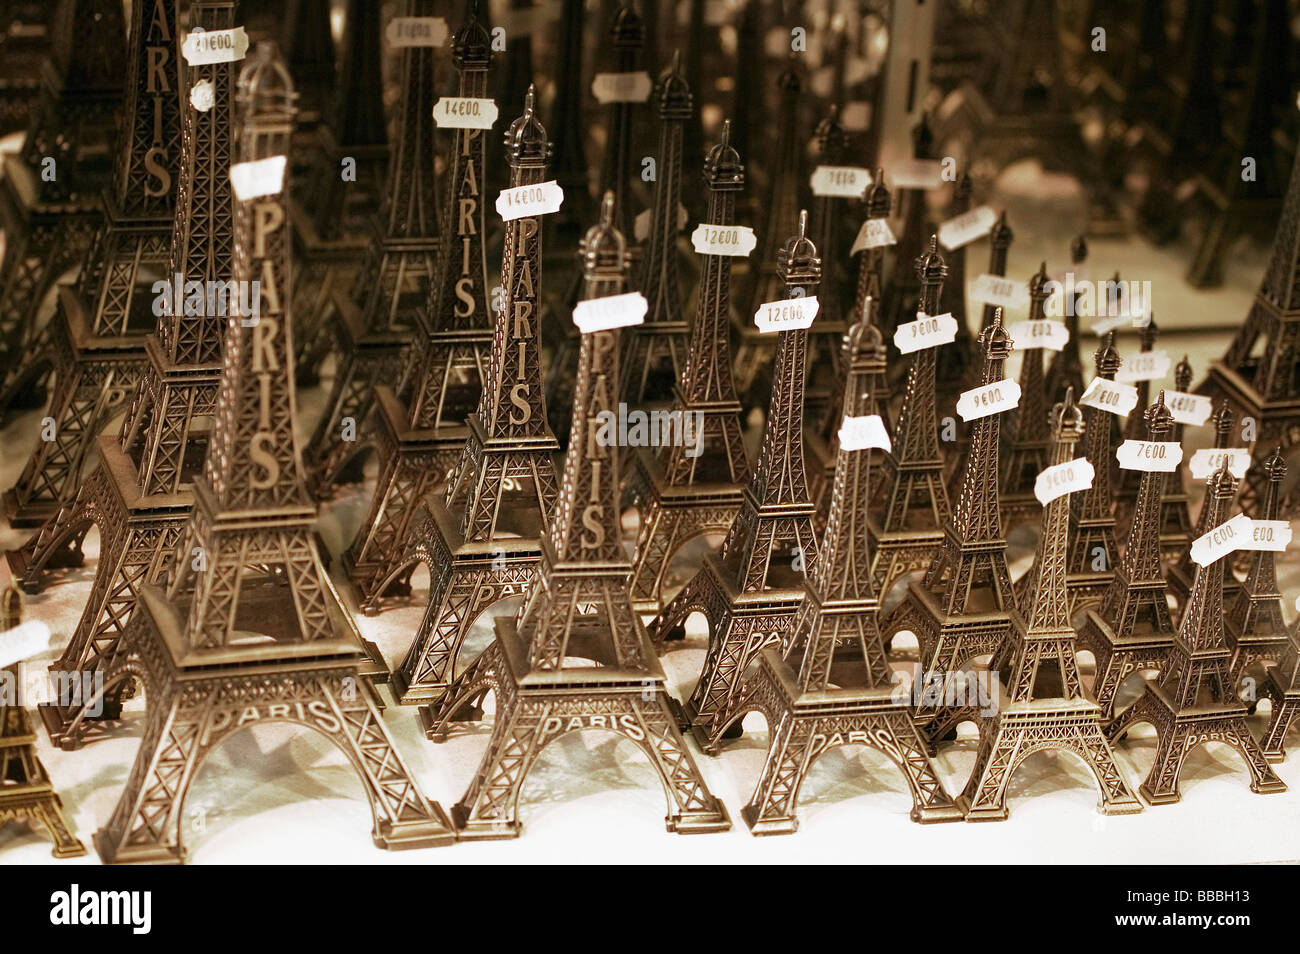 Eiffel tower souvenirs; Paris, France Stock Photo